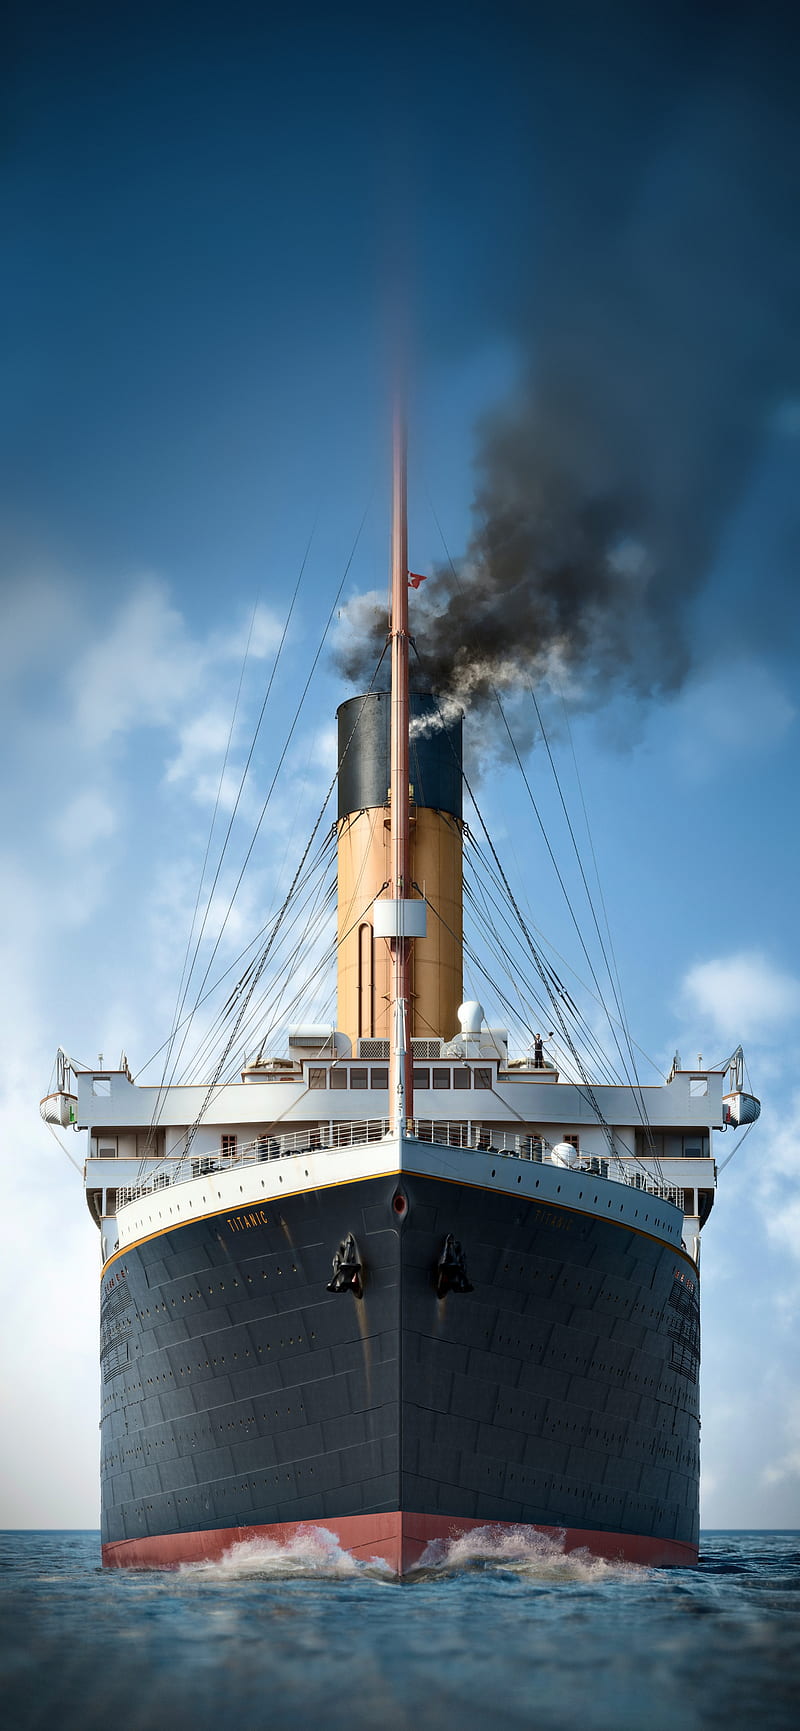 Khán giả mong chờ phim Titanic bản 4K 3D quay trở lại rạp